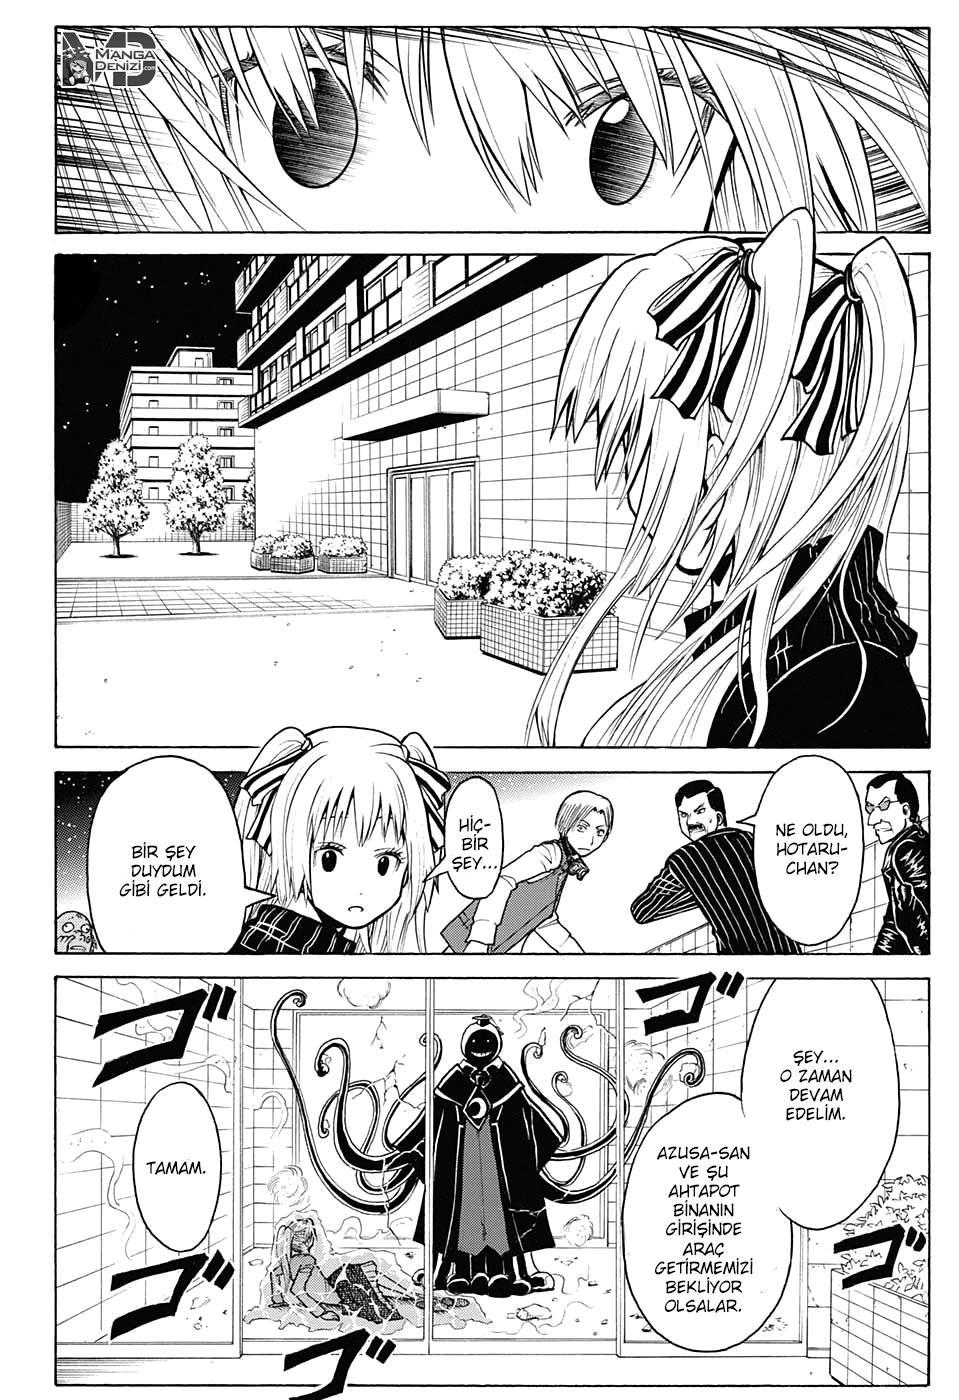 Assassination Classroom mangasının 180.4 bölümünün 3. sayfasını okuyorsunuz.